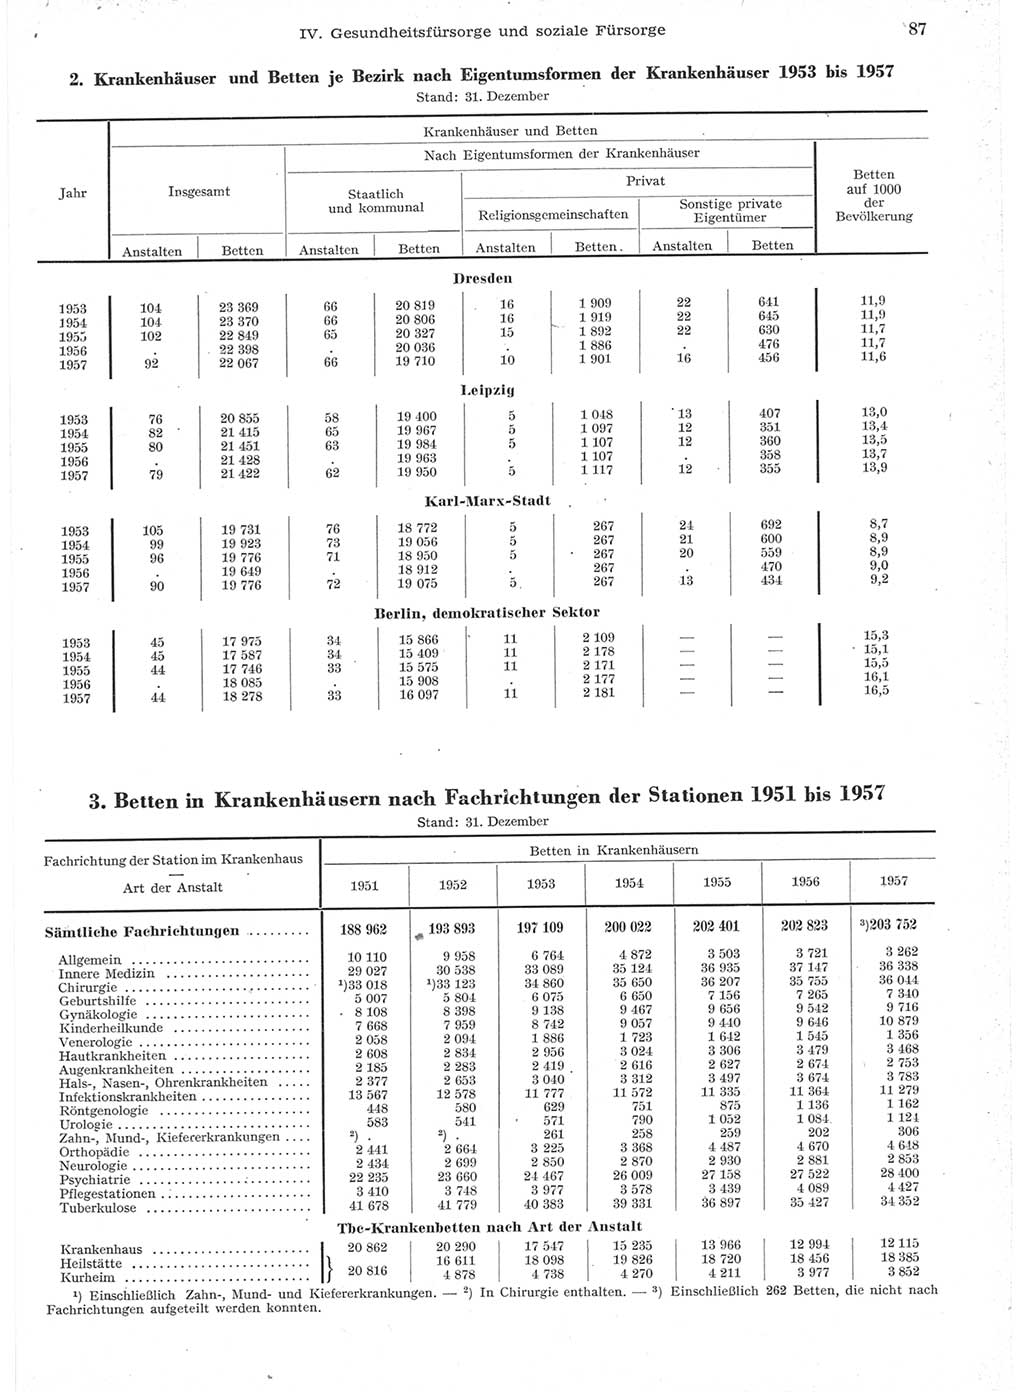 Statistisches Jahrbuch der Deutschen Demokratischen Republik (DDR) 1957, Seite 87 (Stat. Jb. DDR 1957, S. 87)